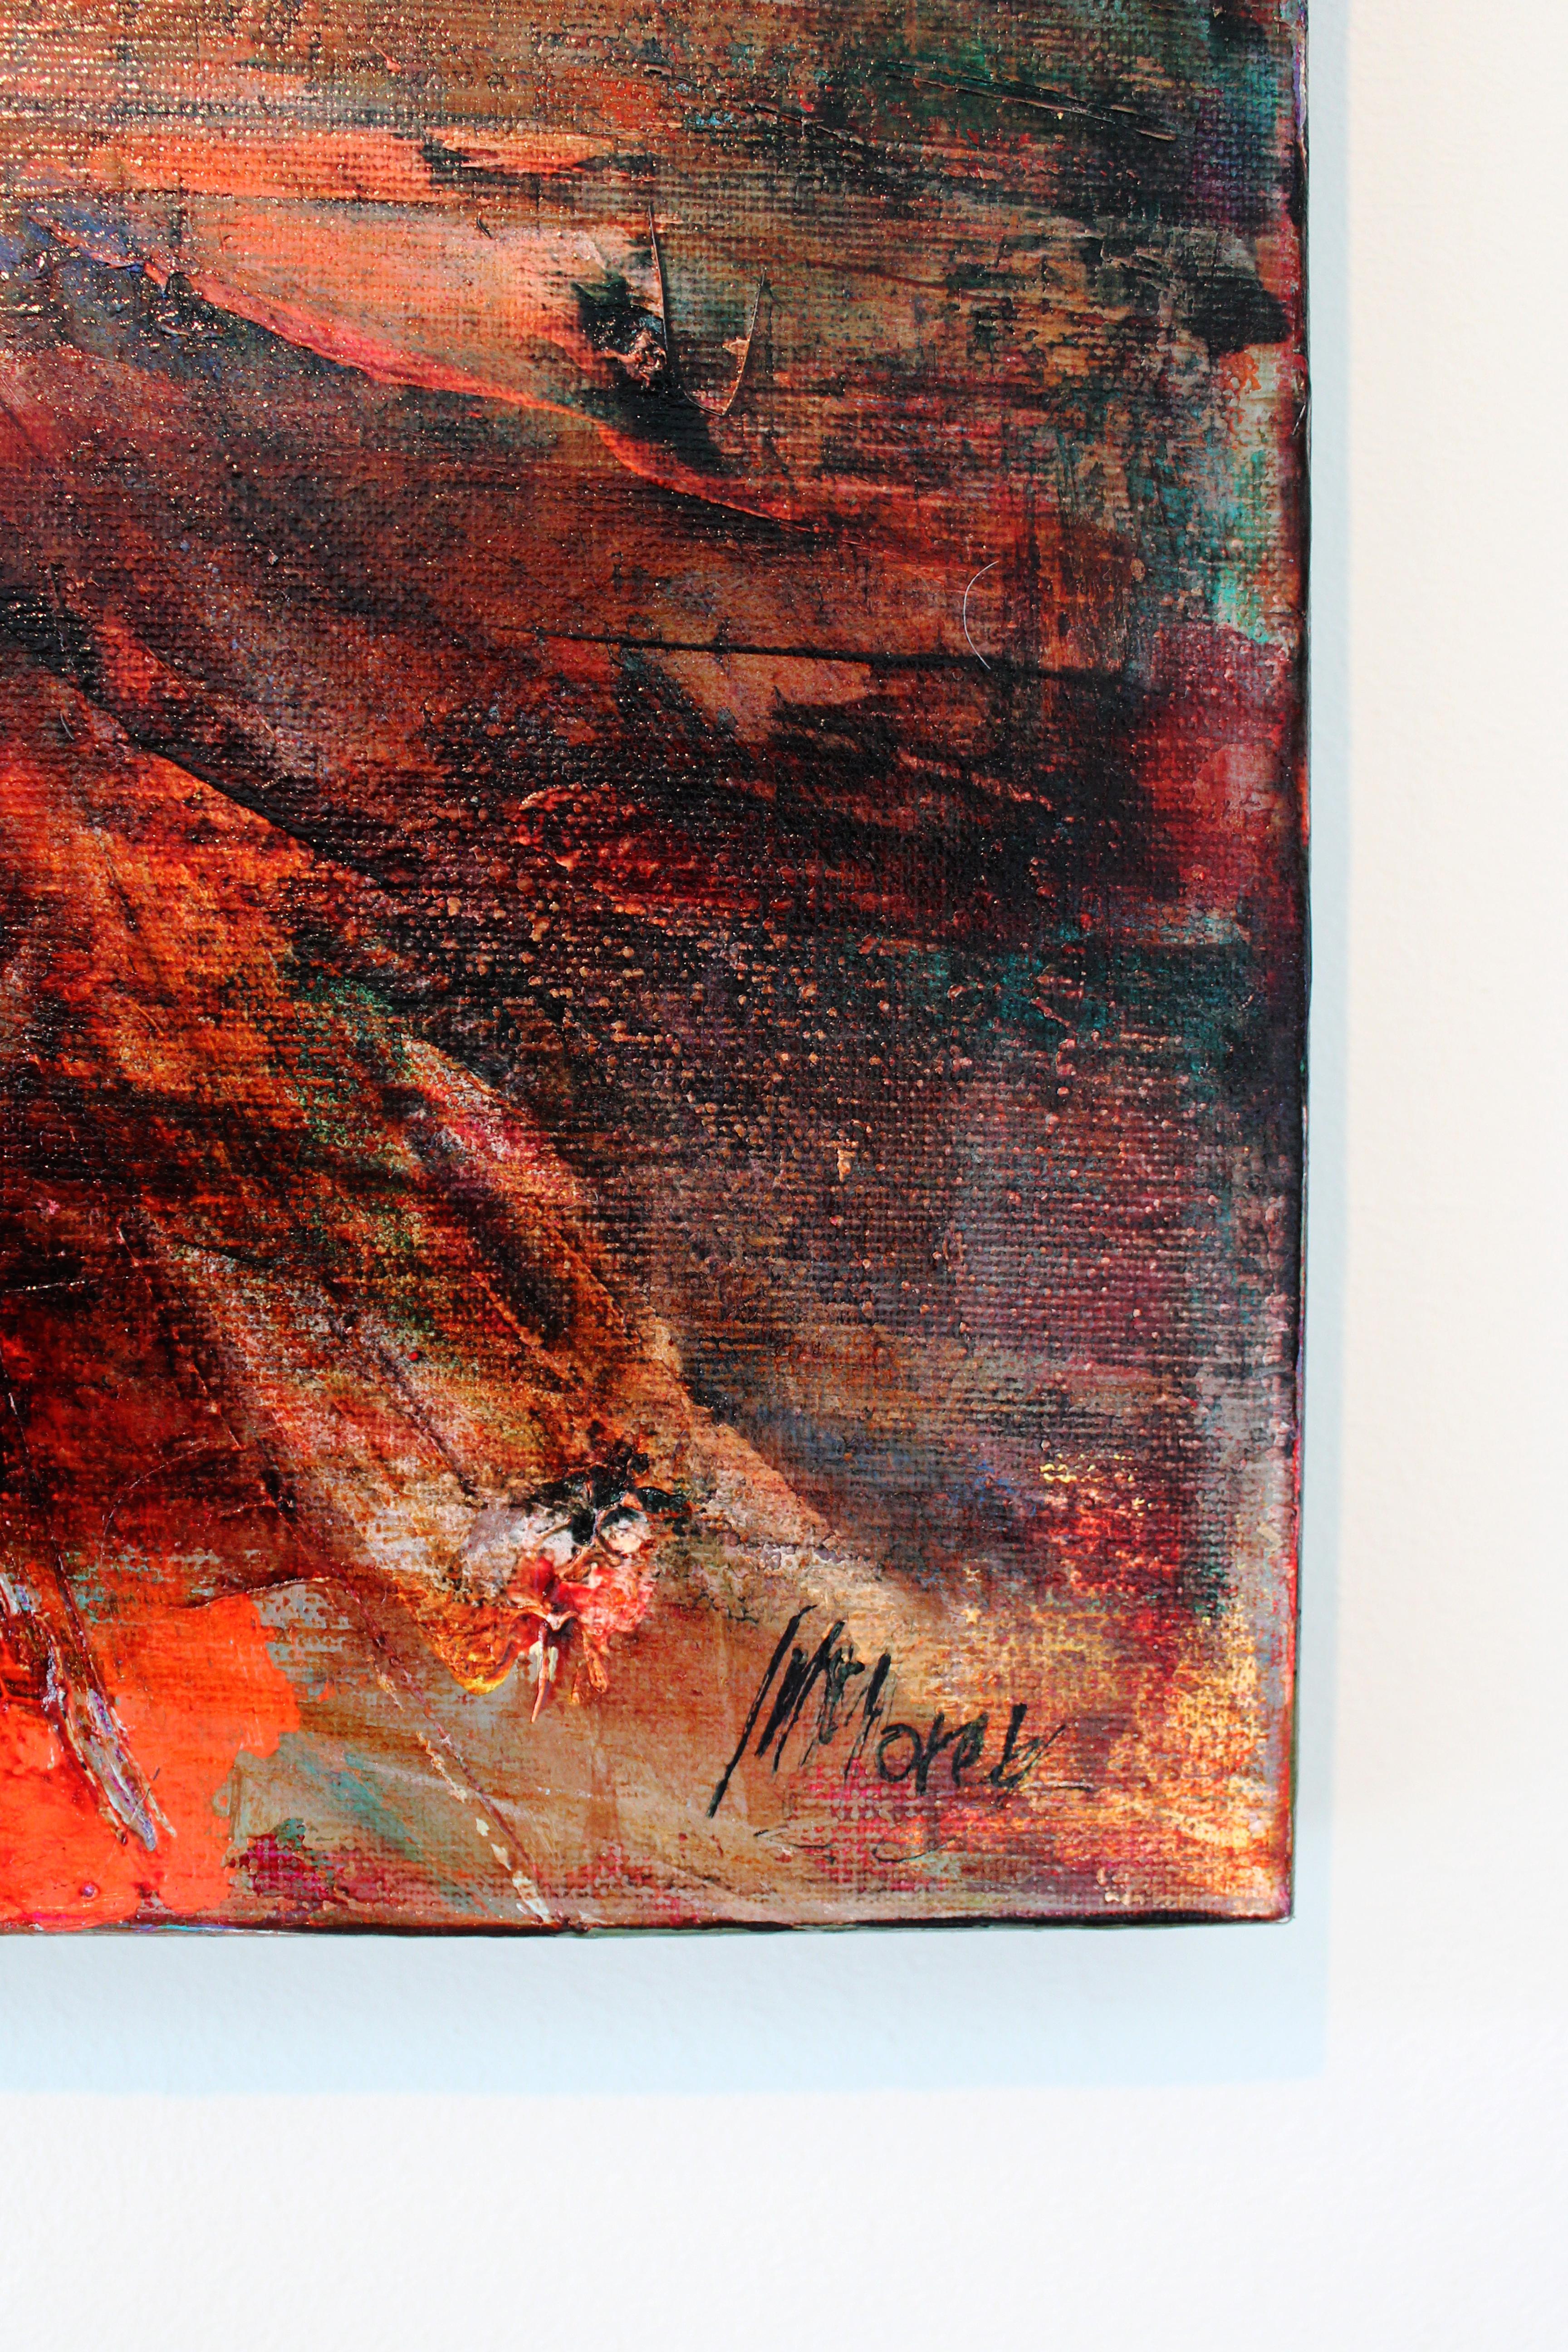 Morning Peaks – originales abstraktes expressionistisches Landschaftsgemälde der Moderne (Abstrakter Expressionismus), Painting, von Magdalena Morey